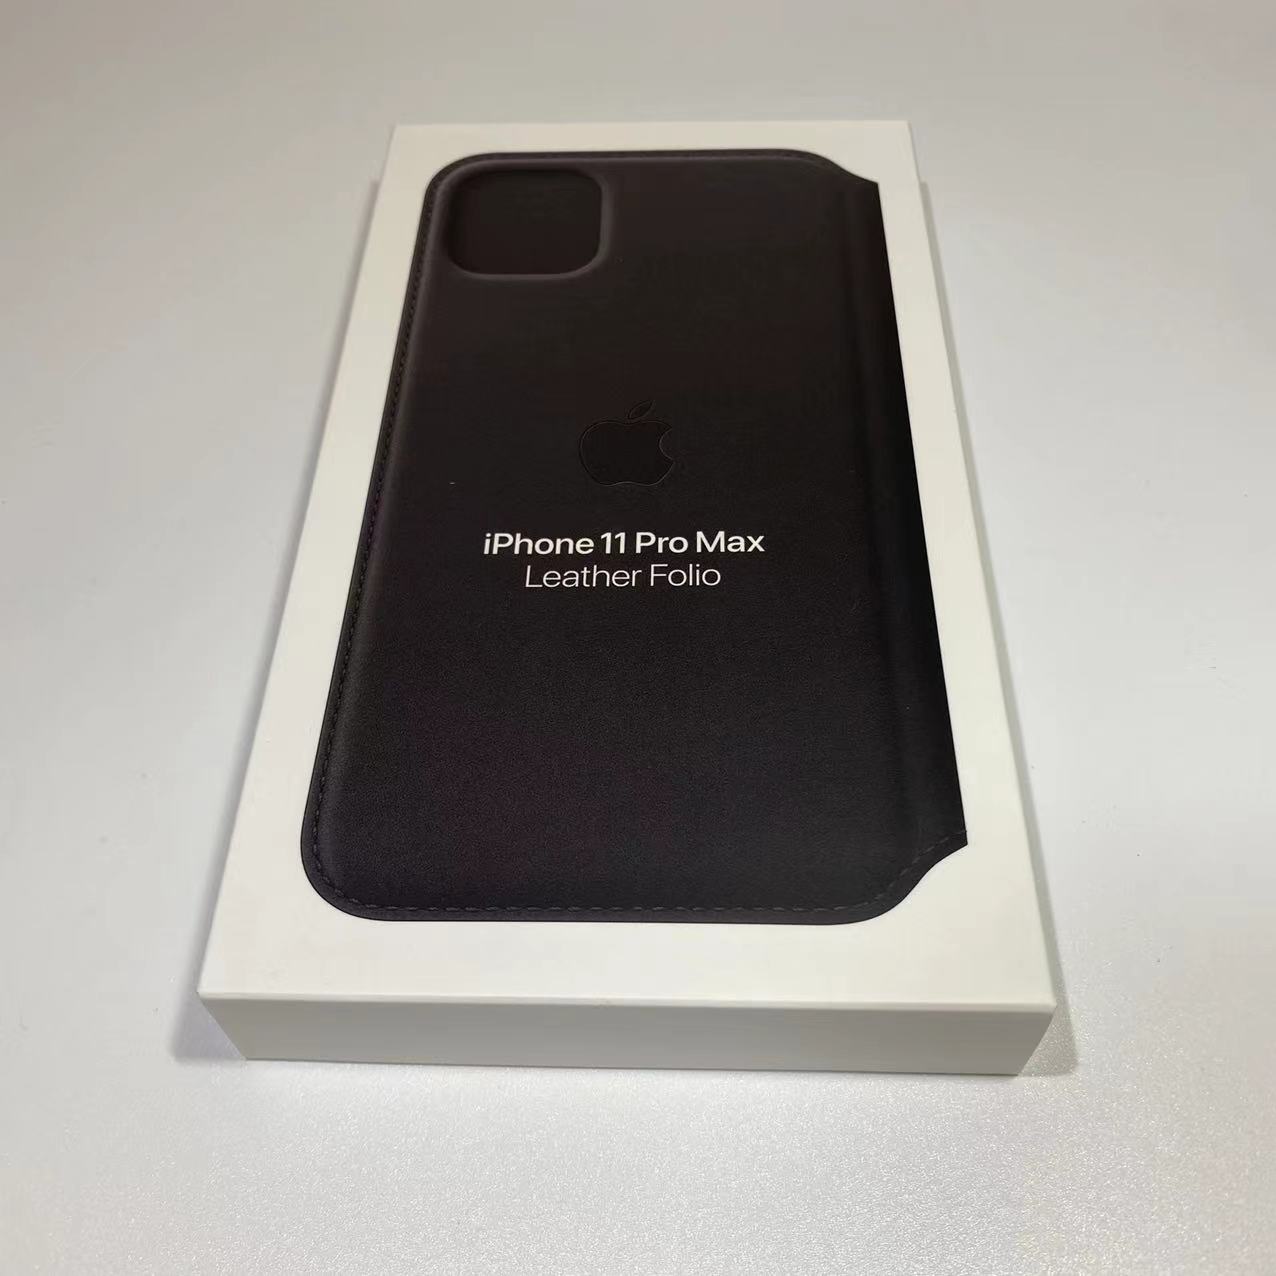 【新品・未開封】Apple 純正 iPhone 11 Pro Max Leather Folio / レザーフォリオ ブラック MX082FE/A 送料無料